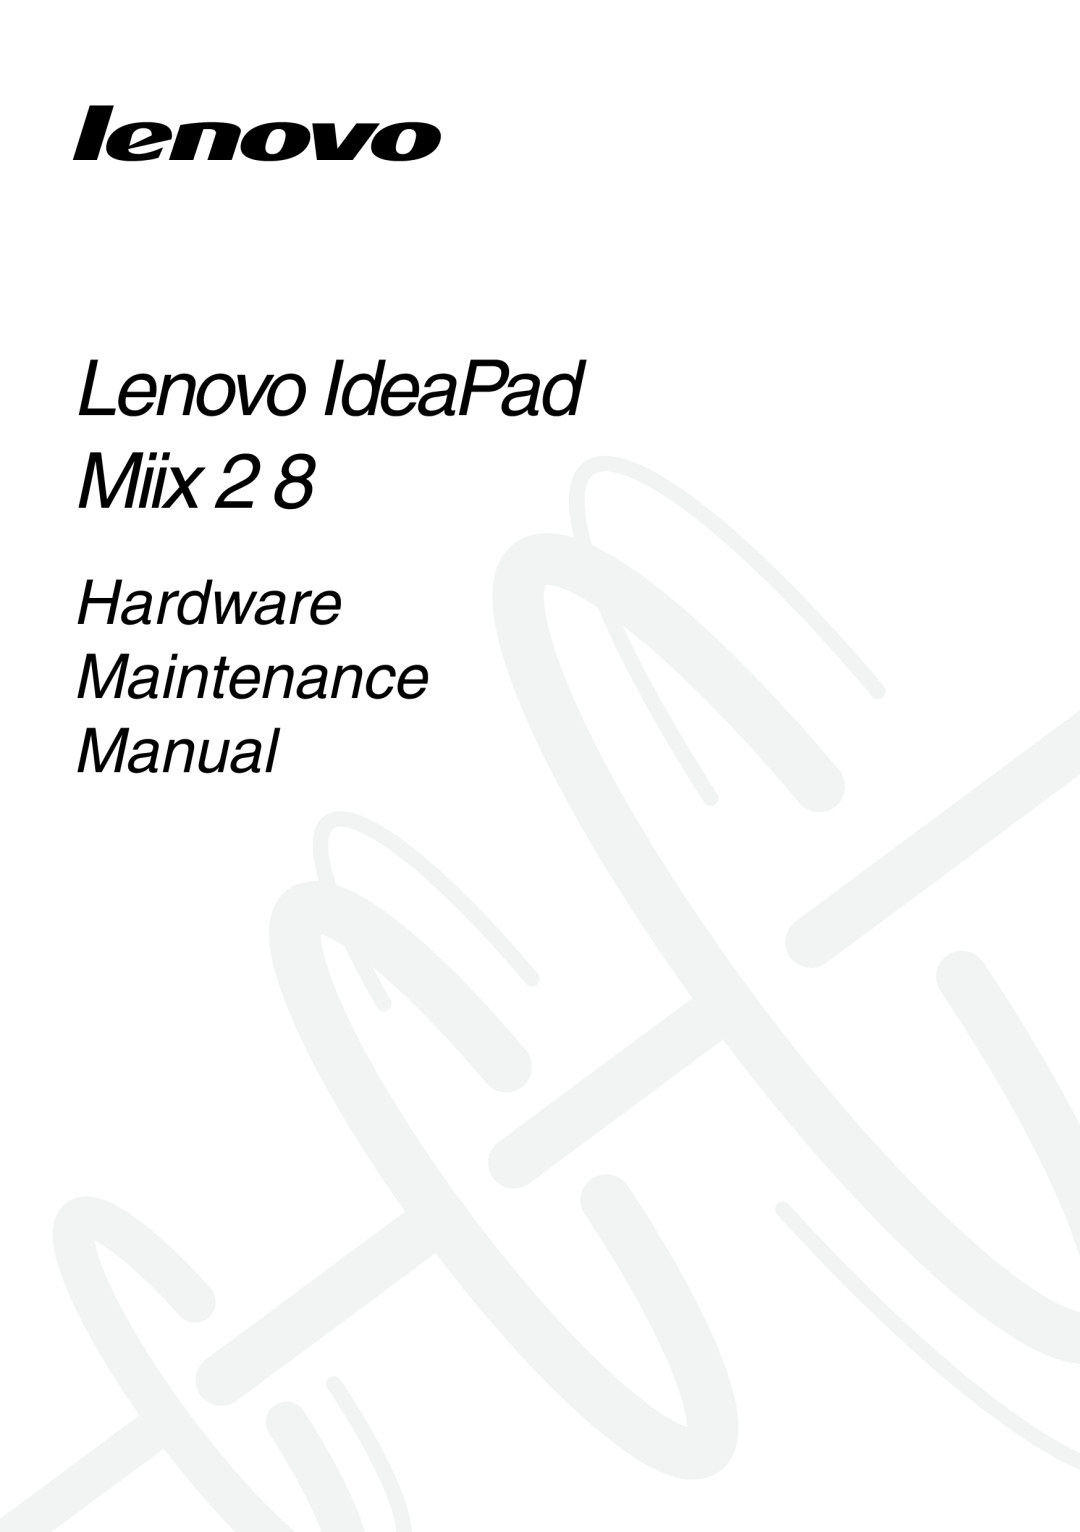 Lenovo MIIX 2 8 manual Lenovo IdeaPad Miix, Hardware Maintenance Manual 